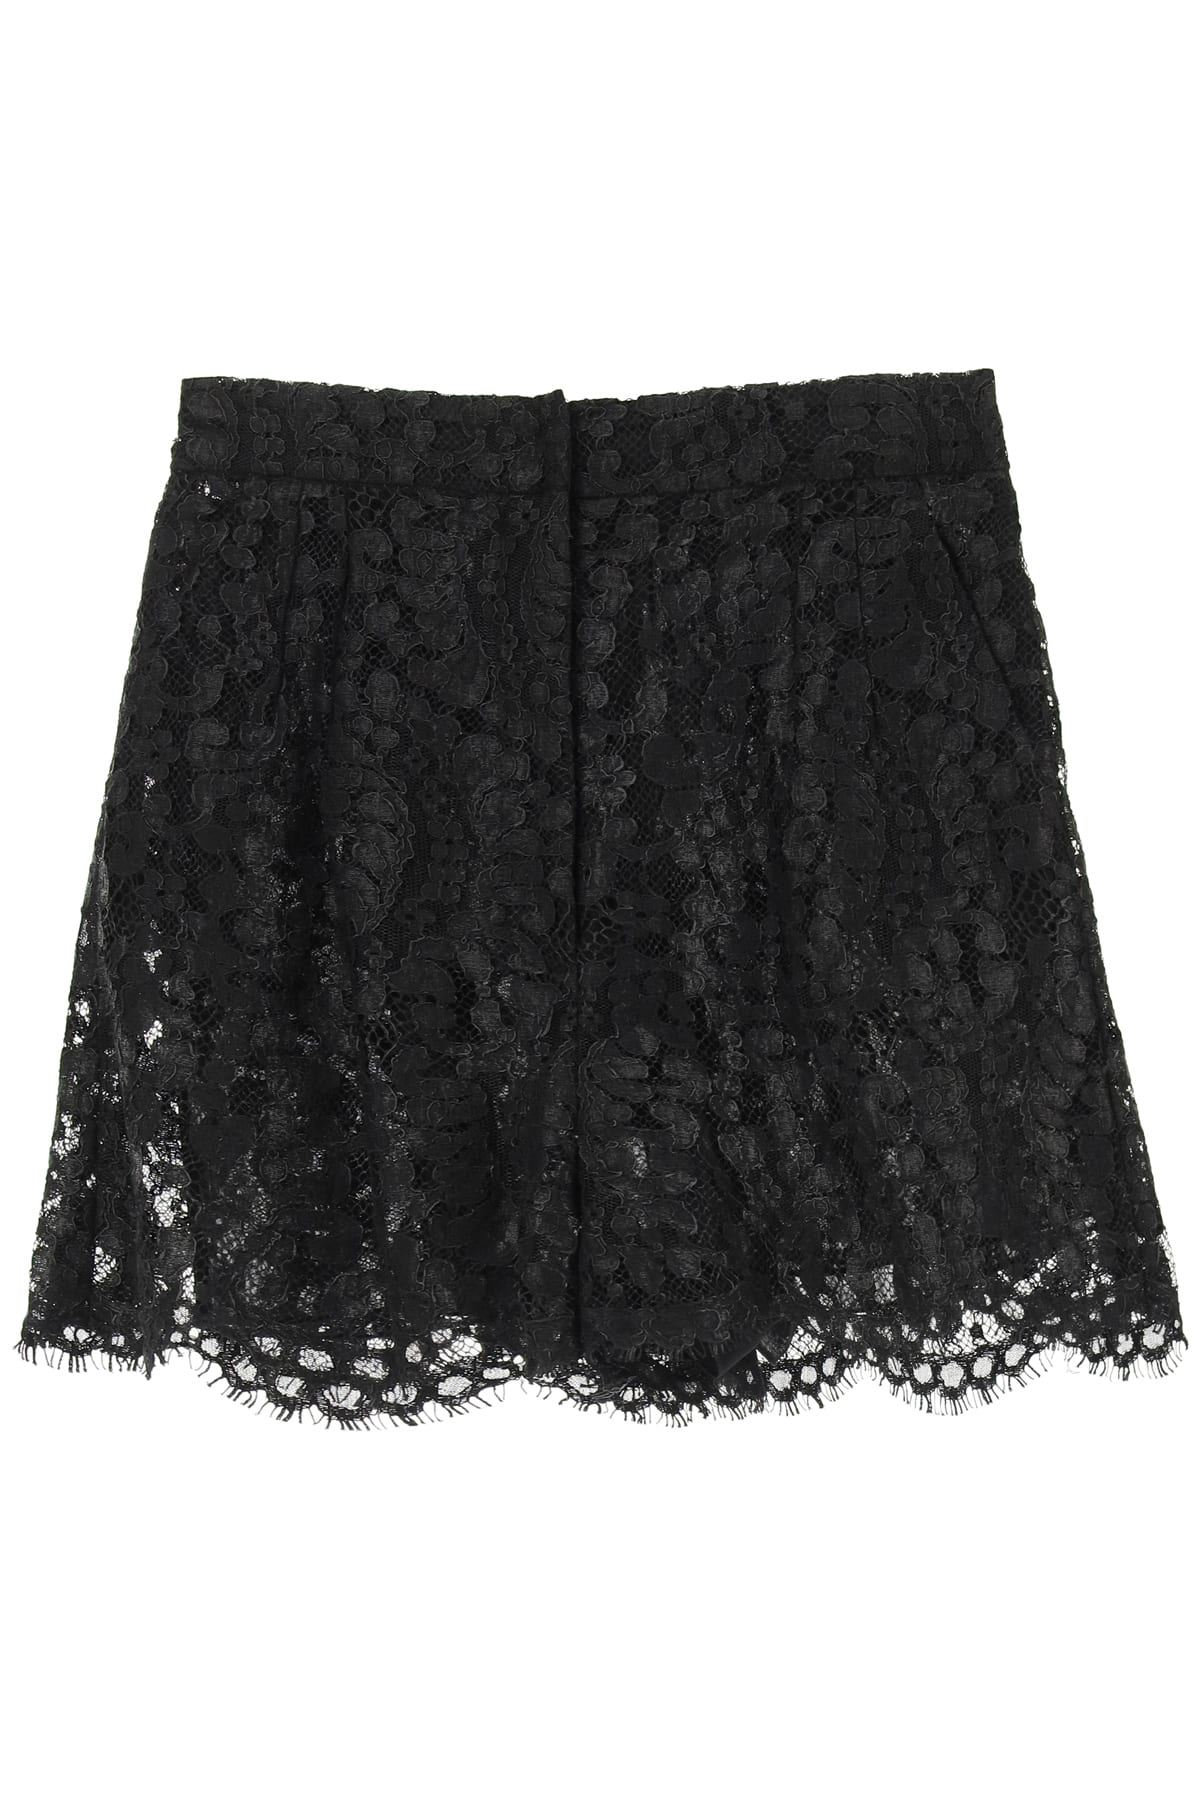 Dolce & Gabbana Laminated Lace Shorts